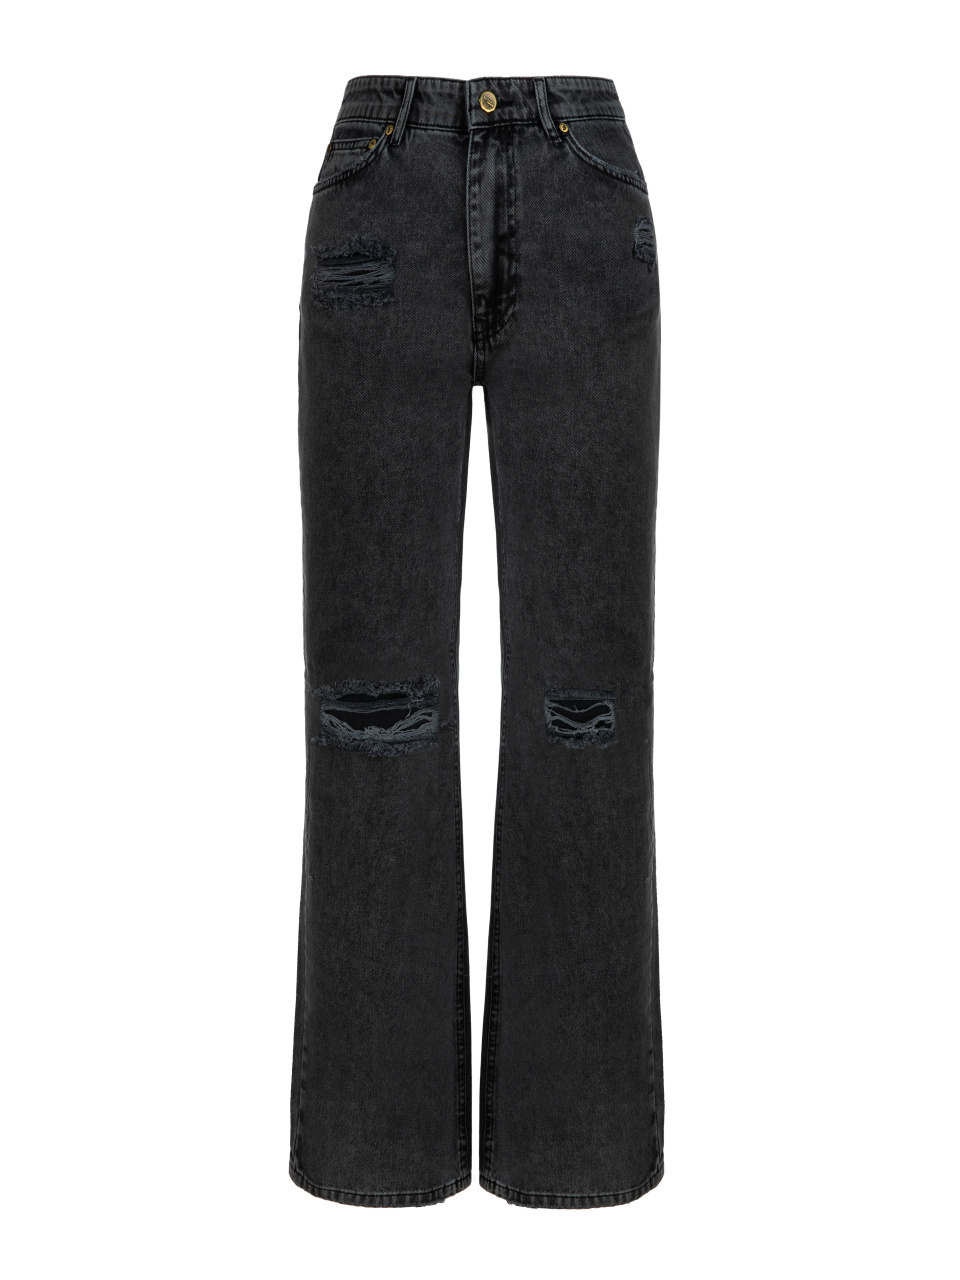 Расклешенные темно-серые джинсы из хлопка, 1